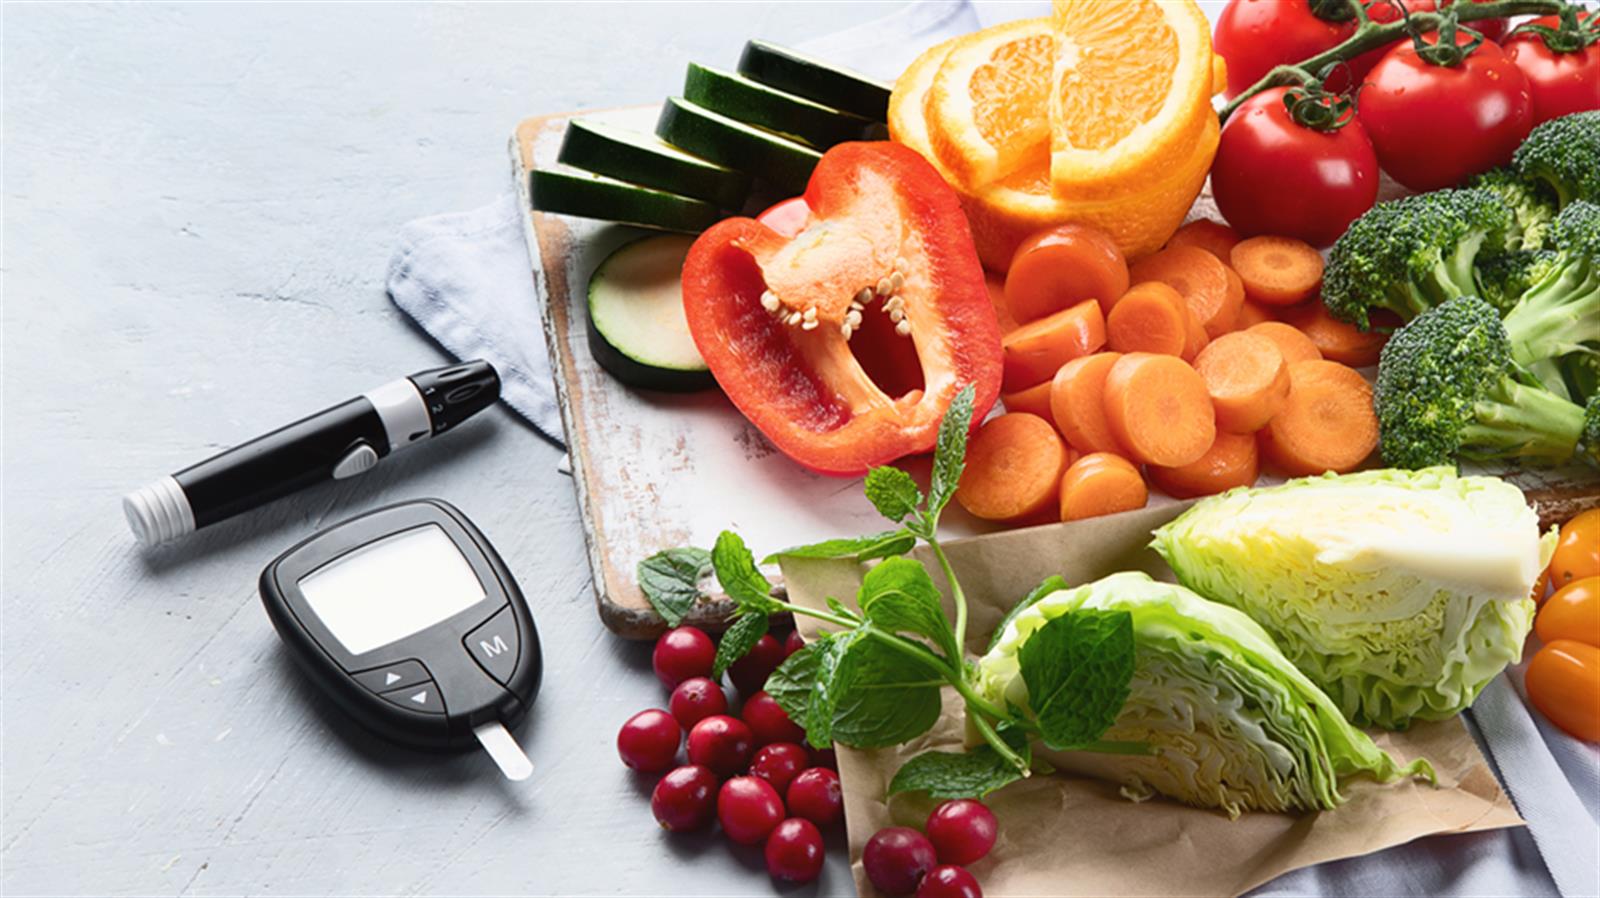 專業營養師建議: 糖尿病患者兩餐間隔不可超過6小時  有規律進餐有助穩定血糖